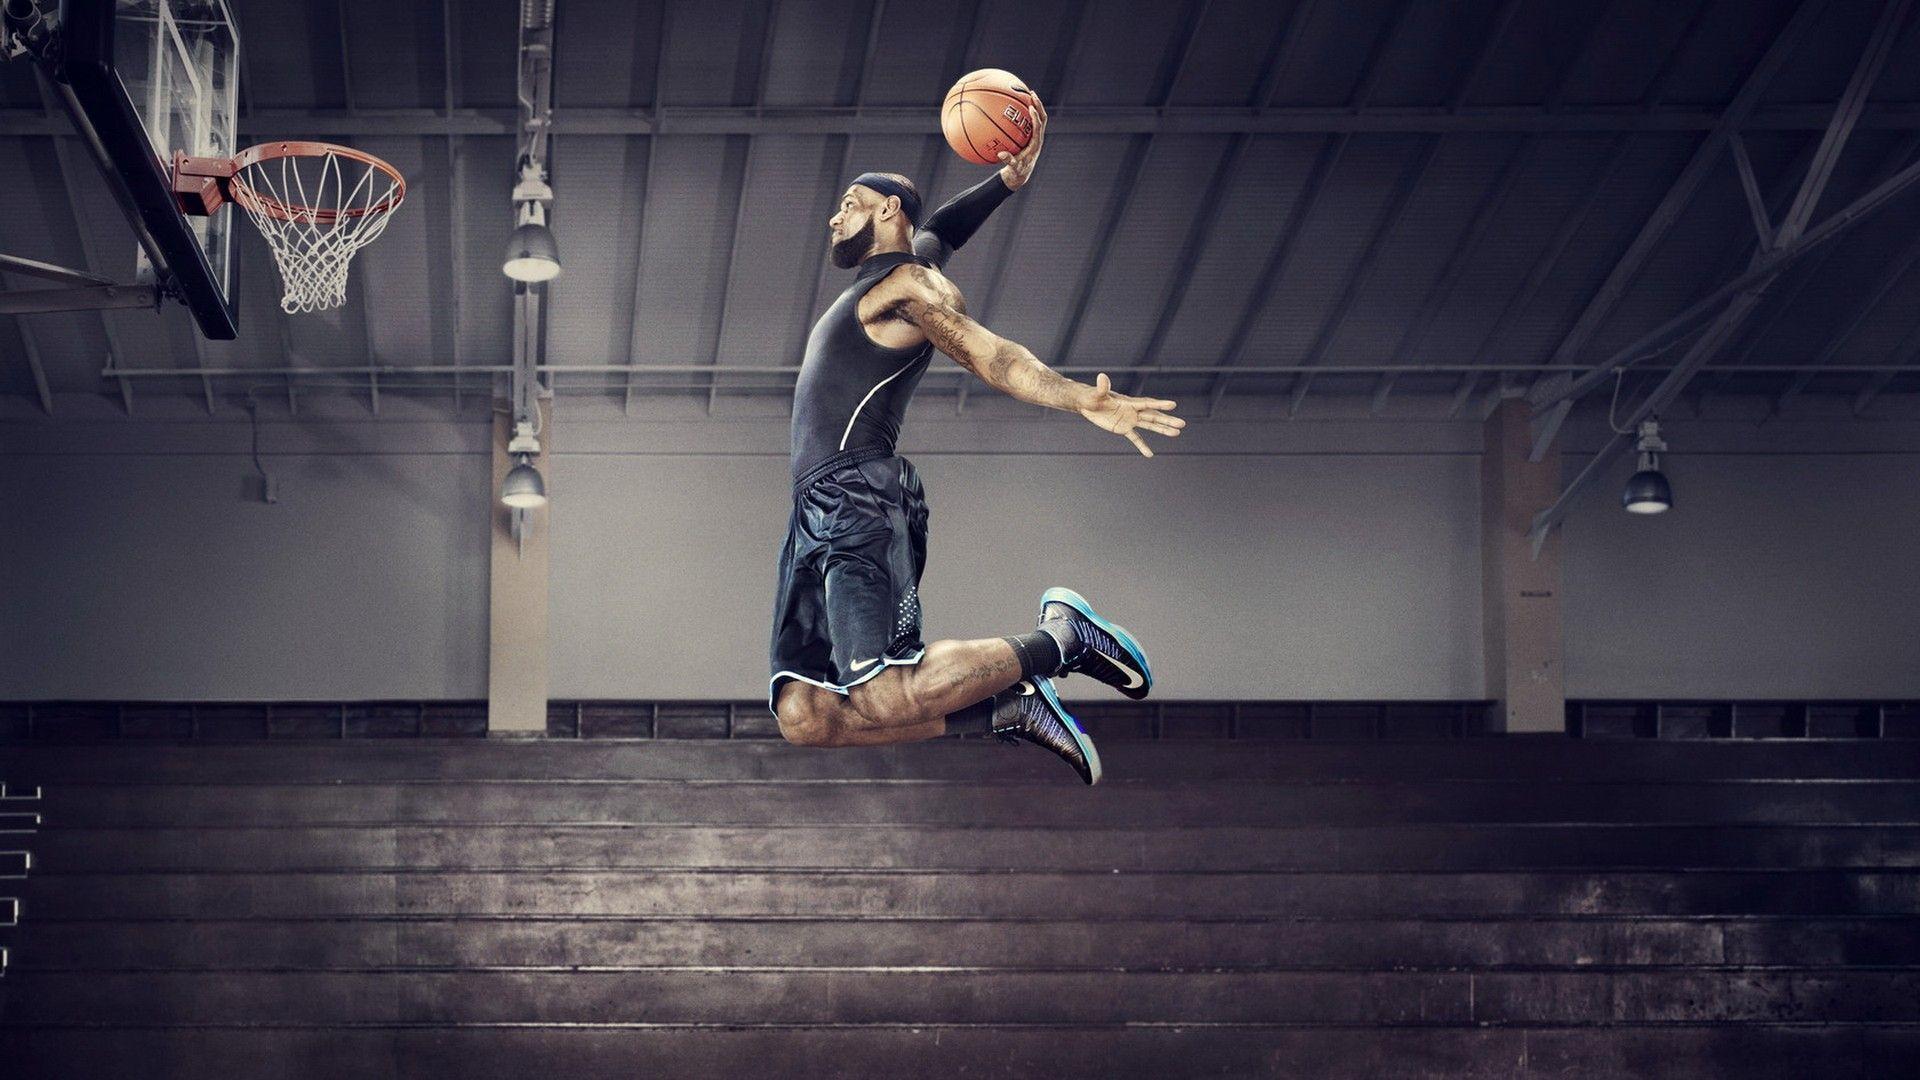 Vince Carter 3D basketball basketball dunk dunk nba nba basketball slam  dunk HD phone wallpaper  Peakpx